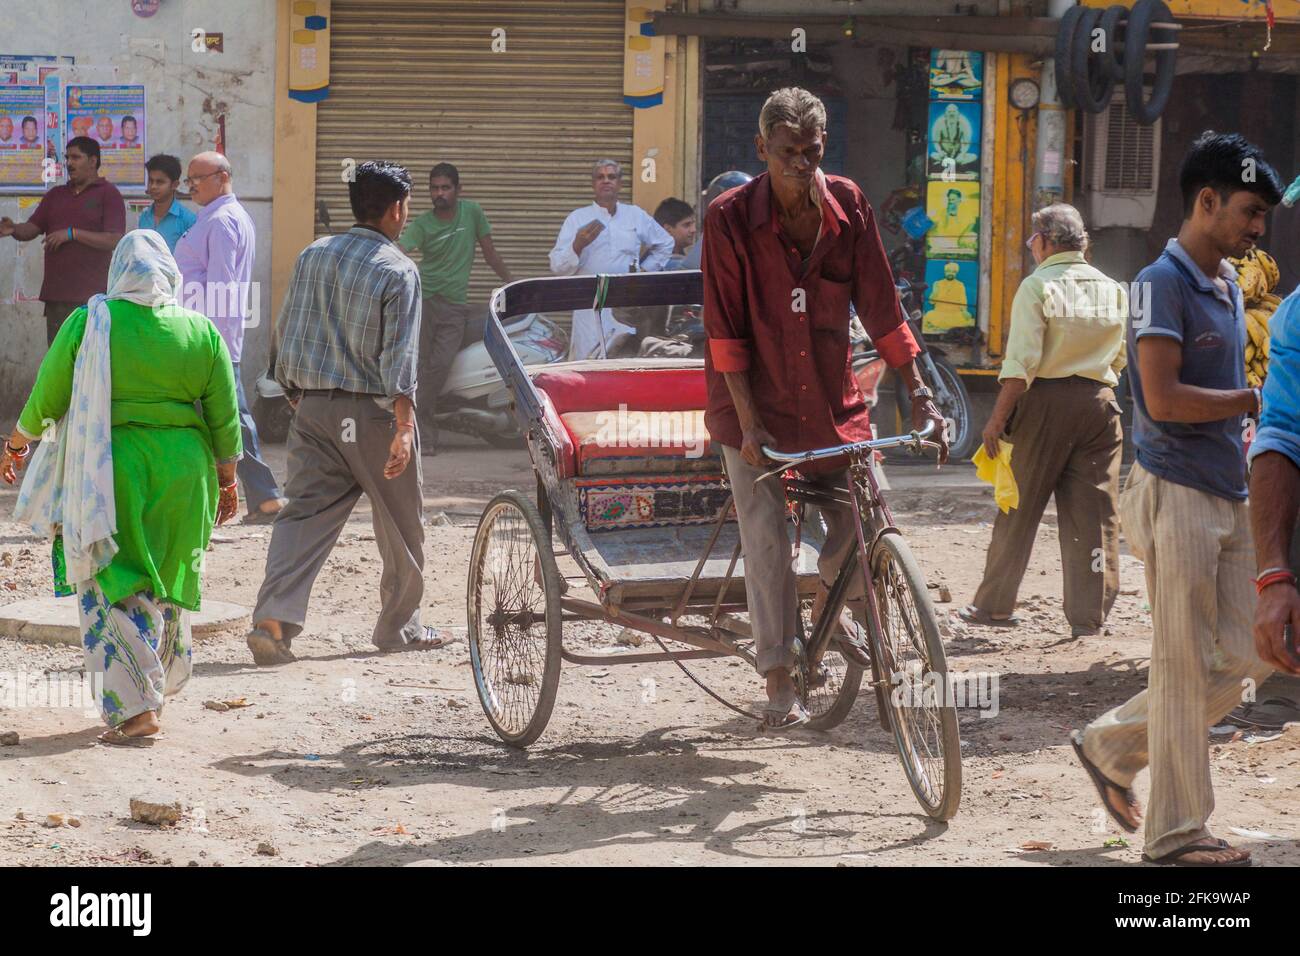 DELHI, INDE - 22 OCTOBRE 2016 : promenades en cycorickshaw dans le centre de Delhi, Inde Banque D'Images